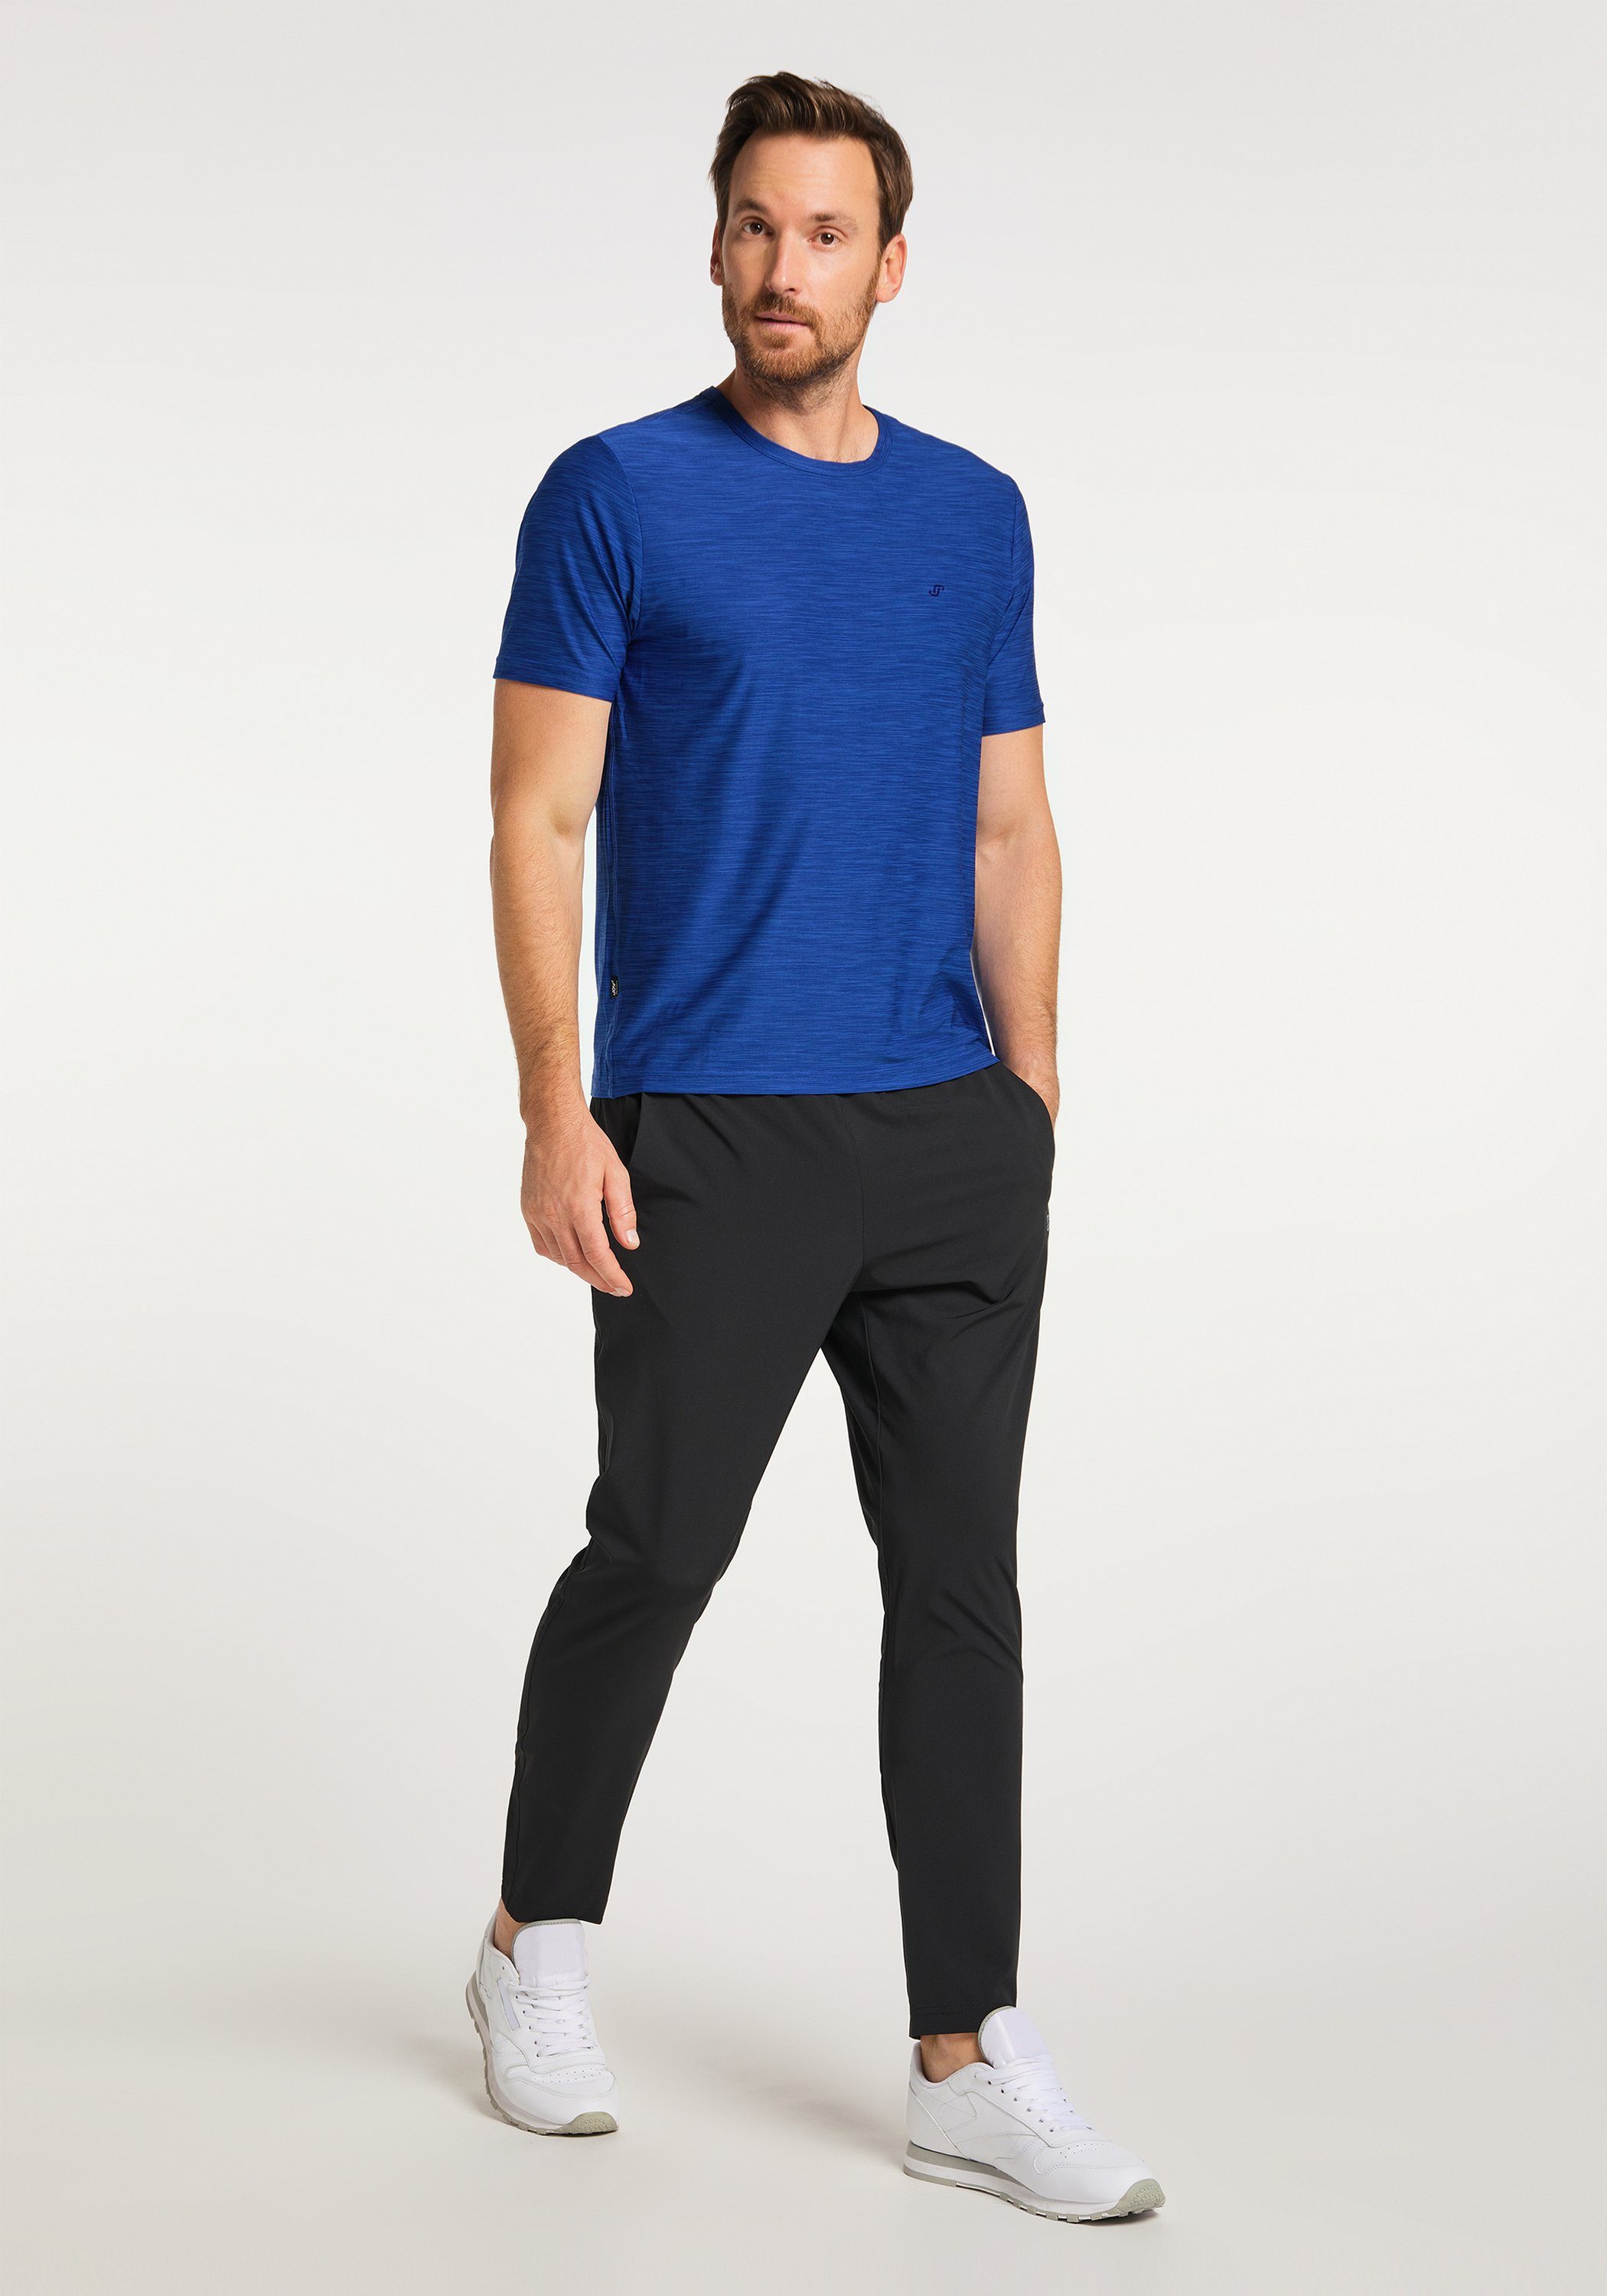 VITUS T-Shirt T-Shirt Joy melange Sportswear kobalt